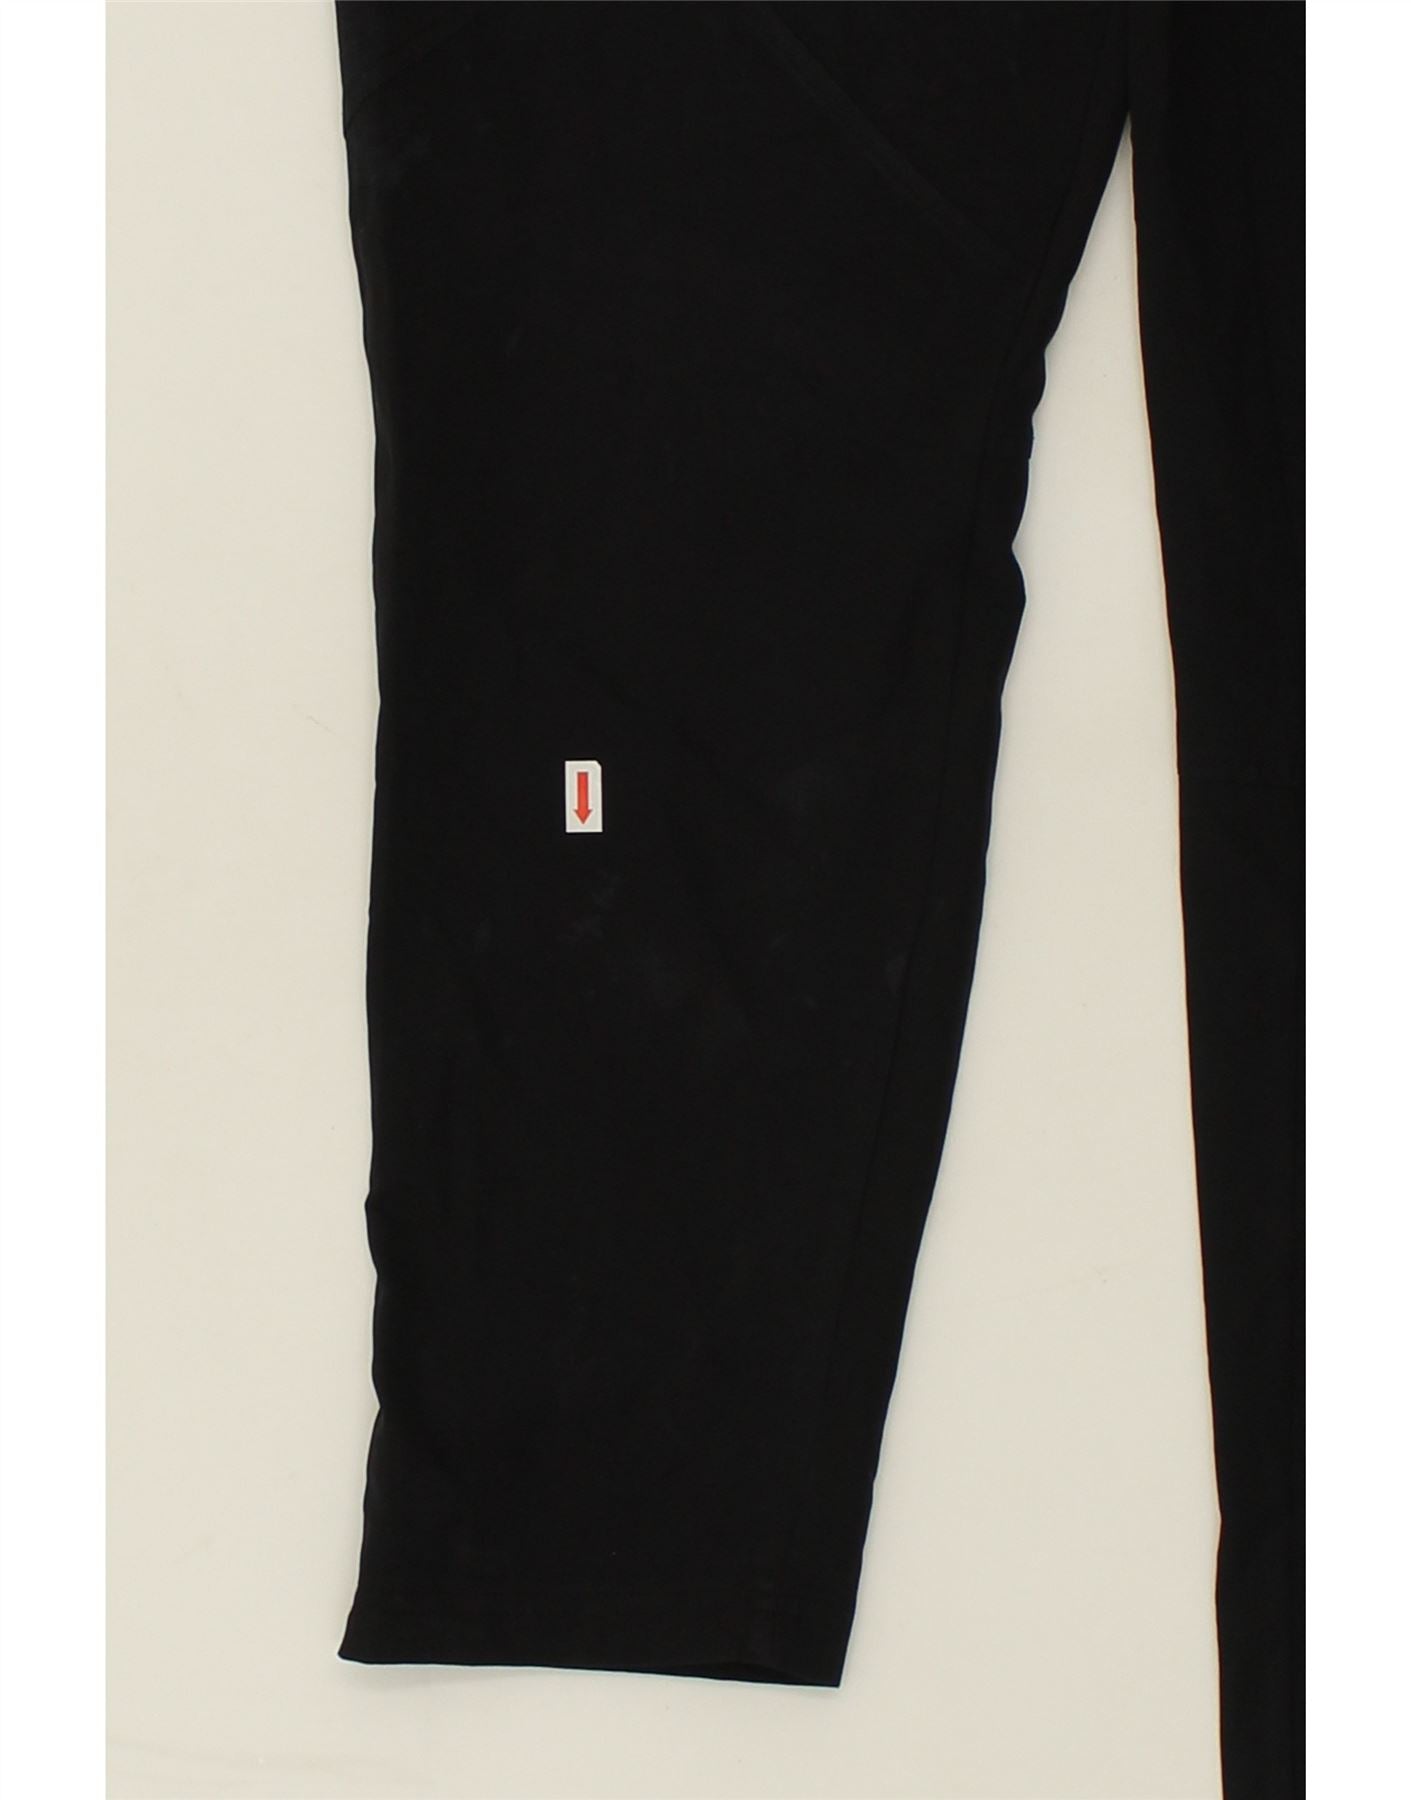 UNDER ARMOR Мужские спортивные брюки большого размера из полиэстера черного цвета | Винтаж под доспехами | Бережливость | Подержанная броня Under Armour | Одежда б/у | Мессина Хембри